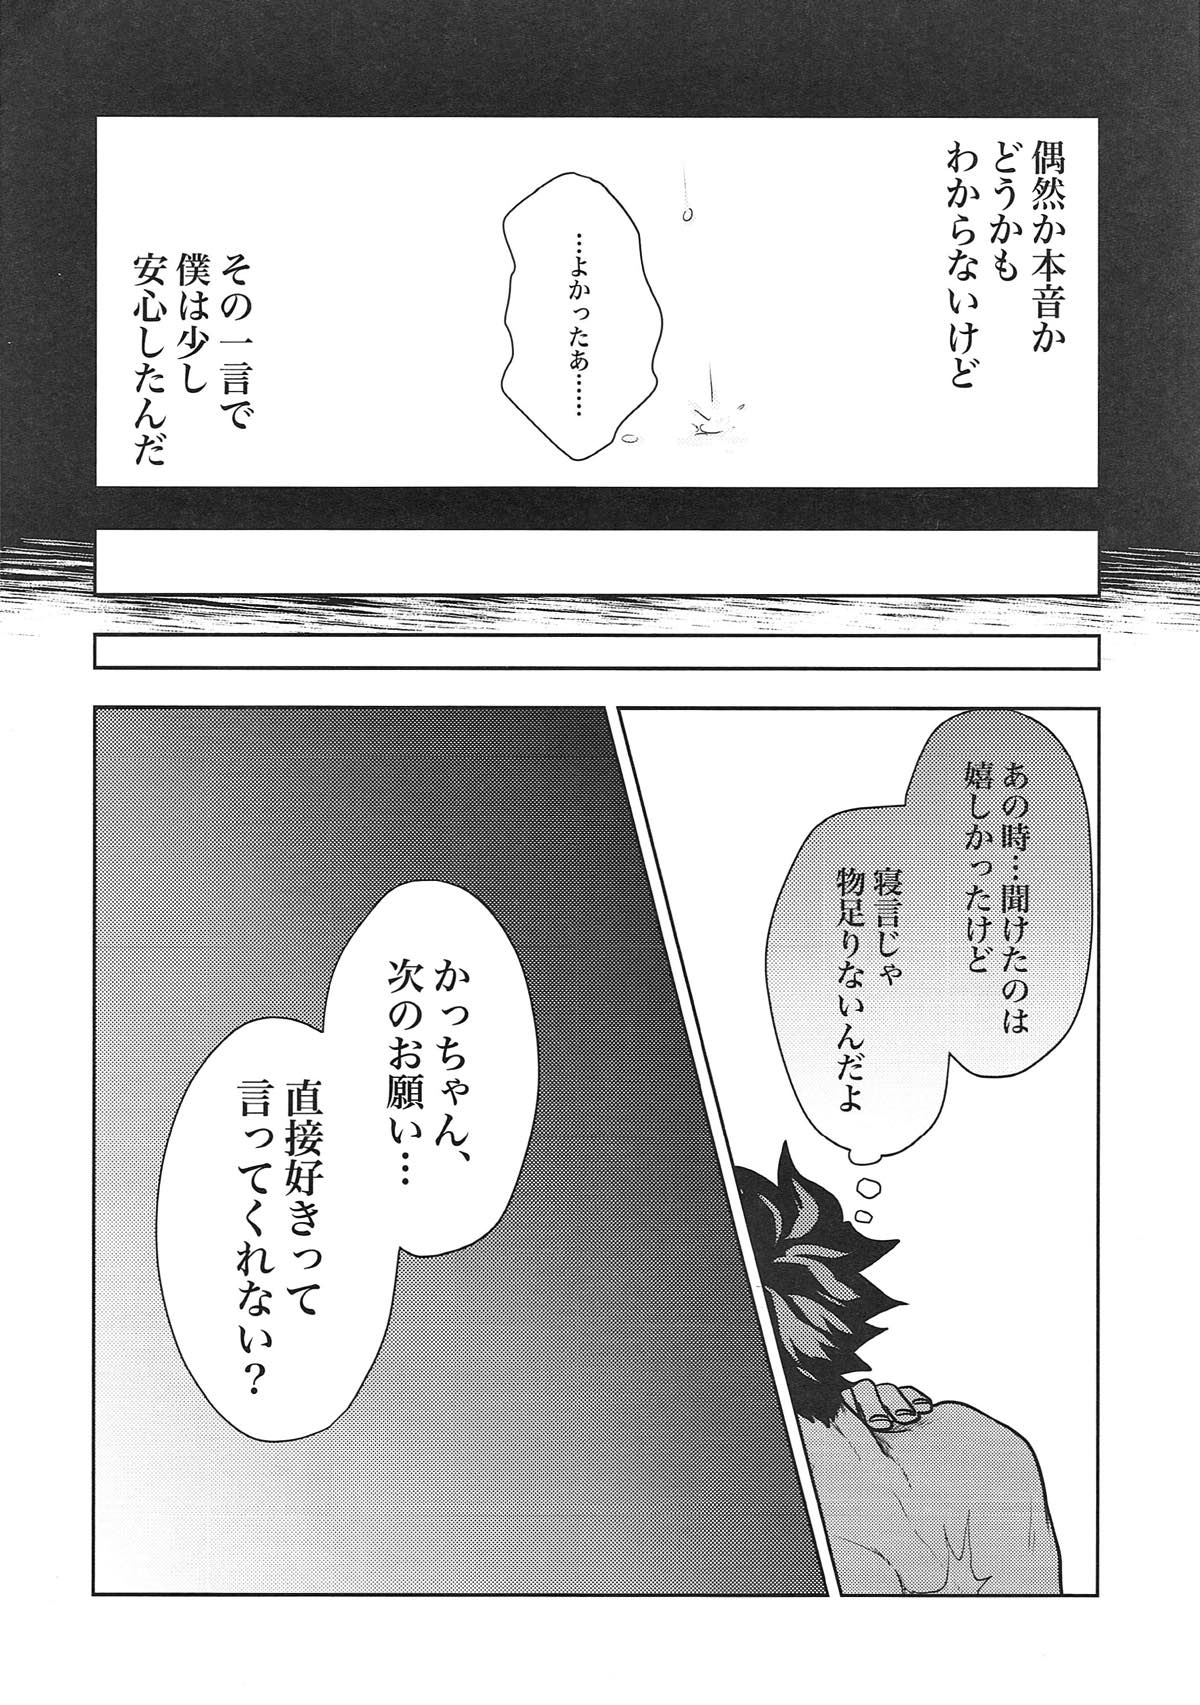 (Douyara Deban no Youda! 10) [Spuspica (Rizu)] Kacchan! Boku no Iu Koto Kiite Kure yo! (Boku no Hero Academia) (どうやら出番のようだ!10) [スプスピカ (リズ)] かっちゃん!僕の言うこと聞いてくれよ! (僕のヒーローアカデミア)